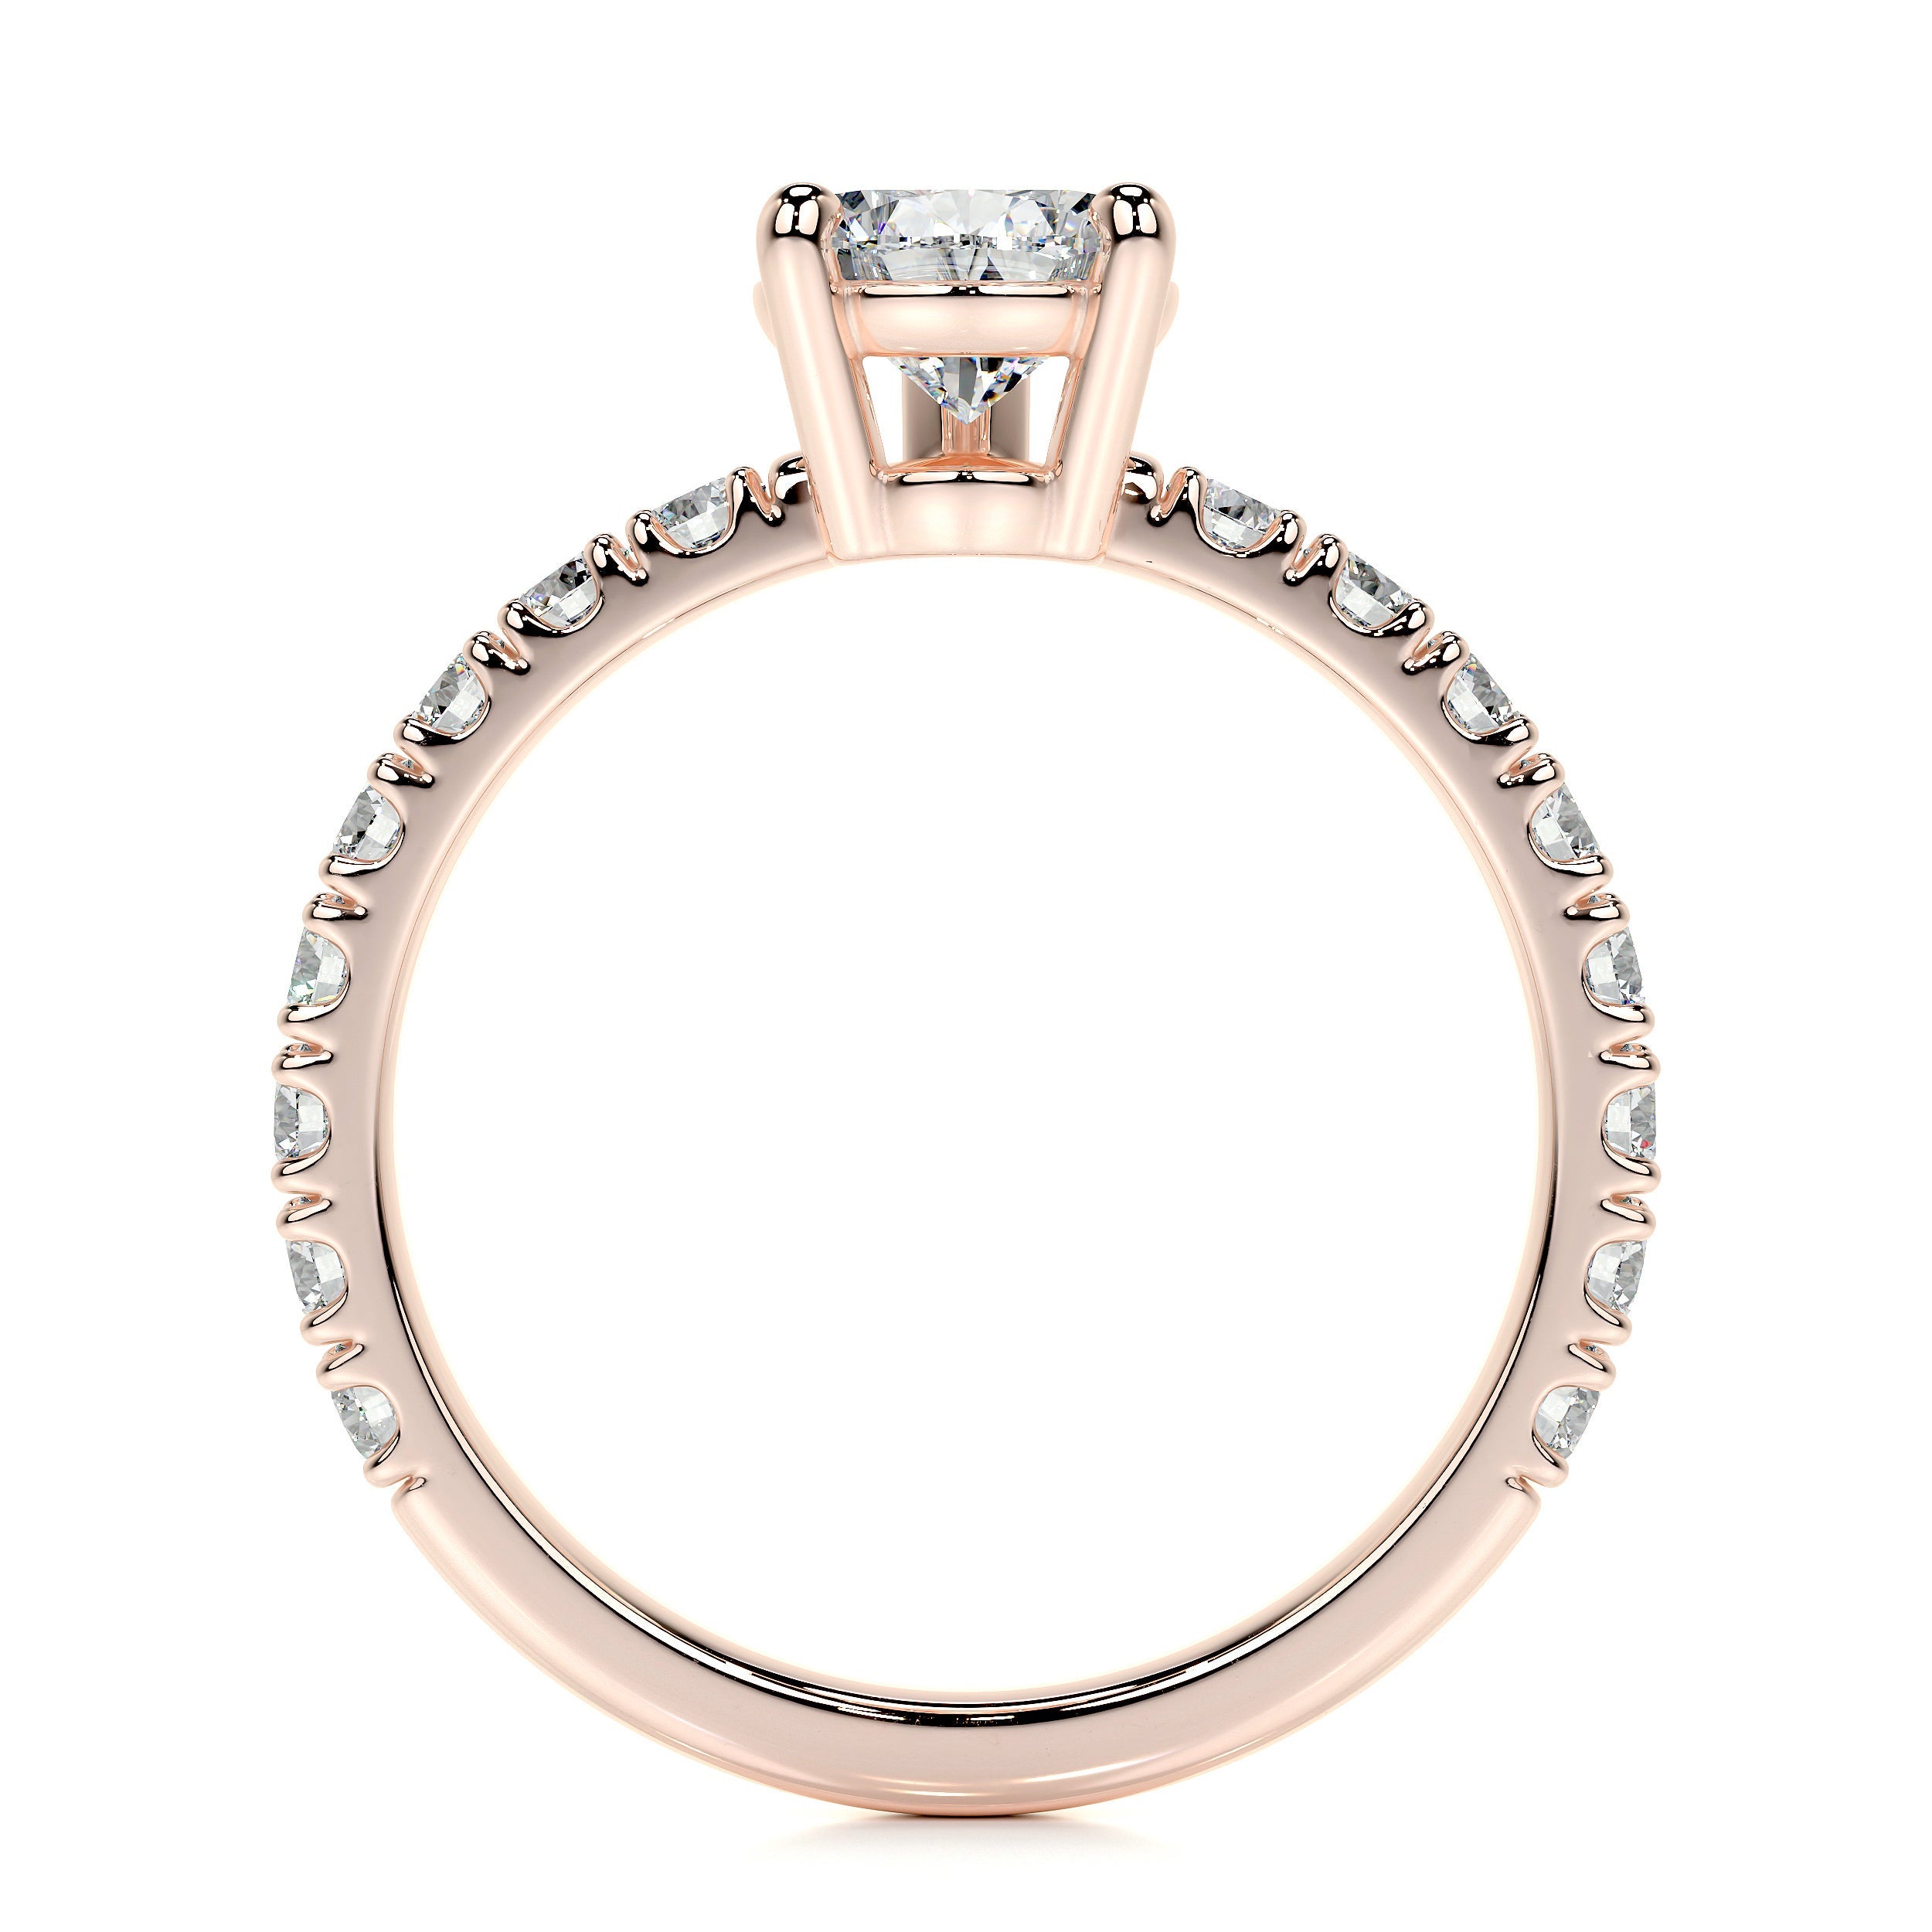 Hailey Lab Grown Diamond Ring   (2 Carat) -14K Rose Gold